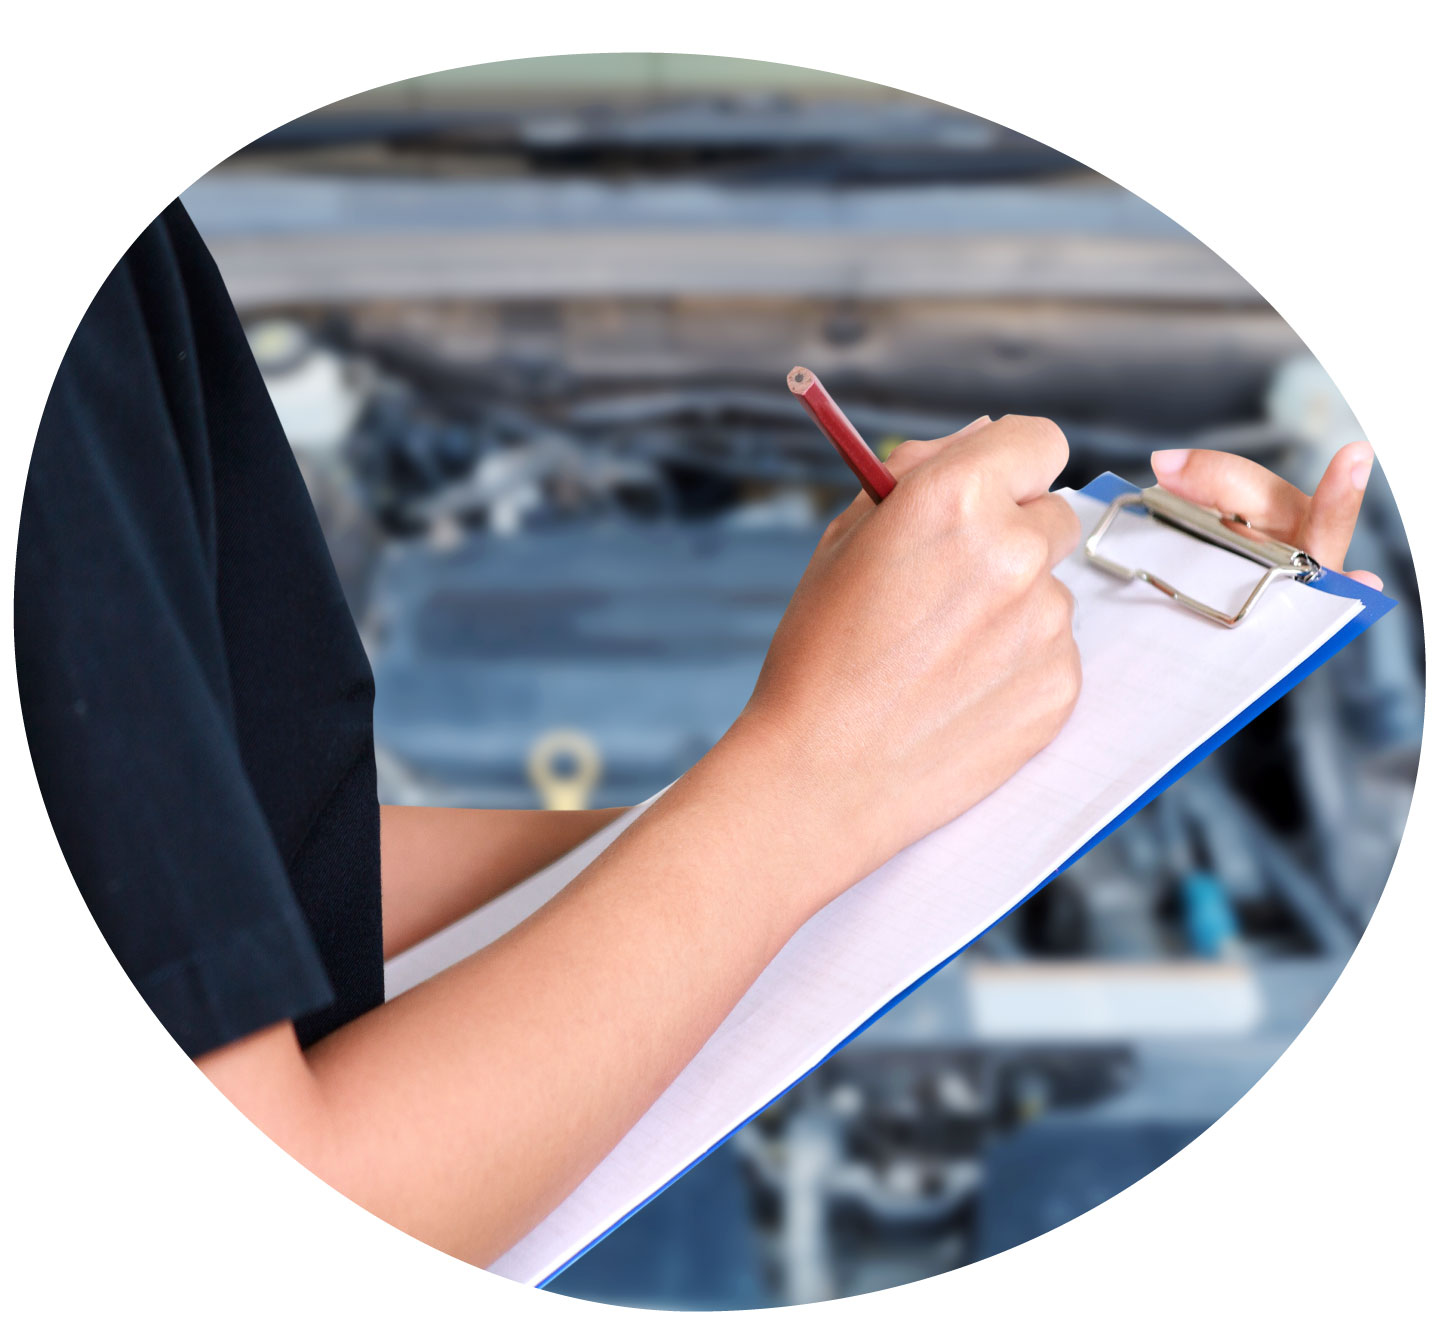 relance au service bon de commande work order Automobile maintenance schedule follow-up